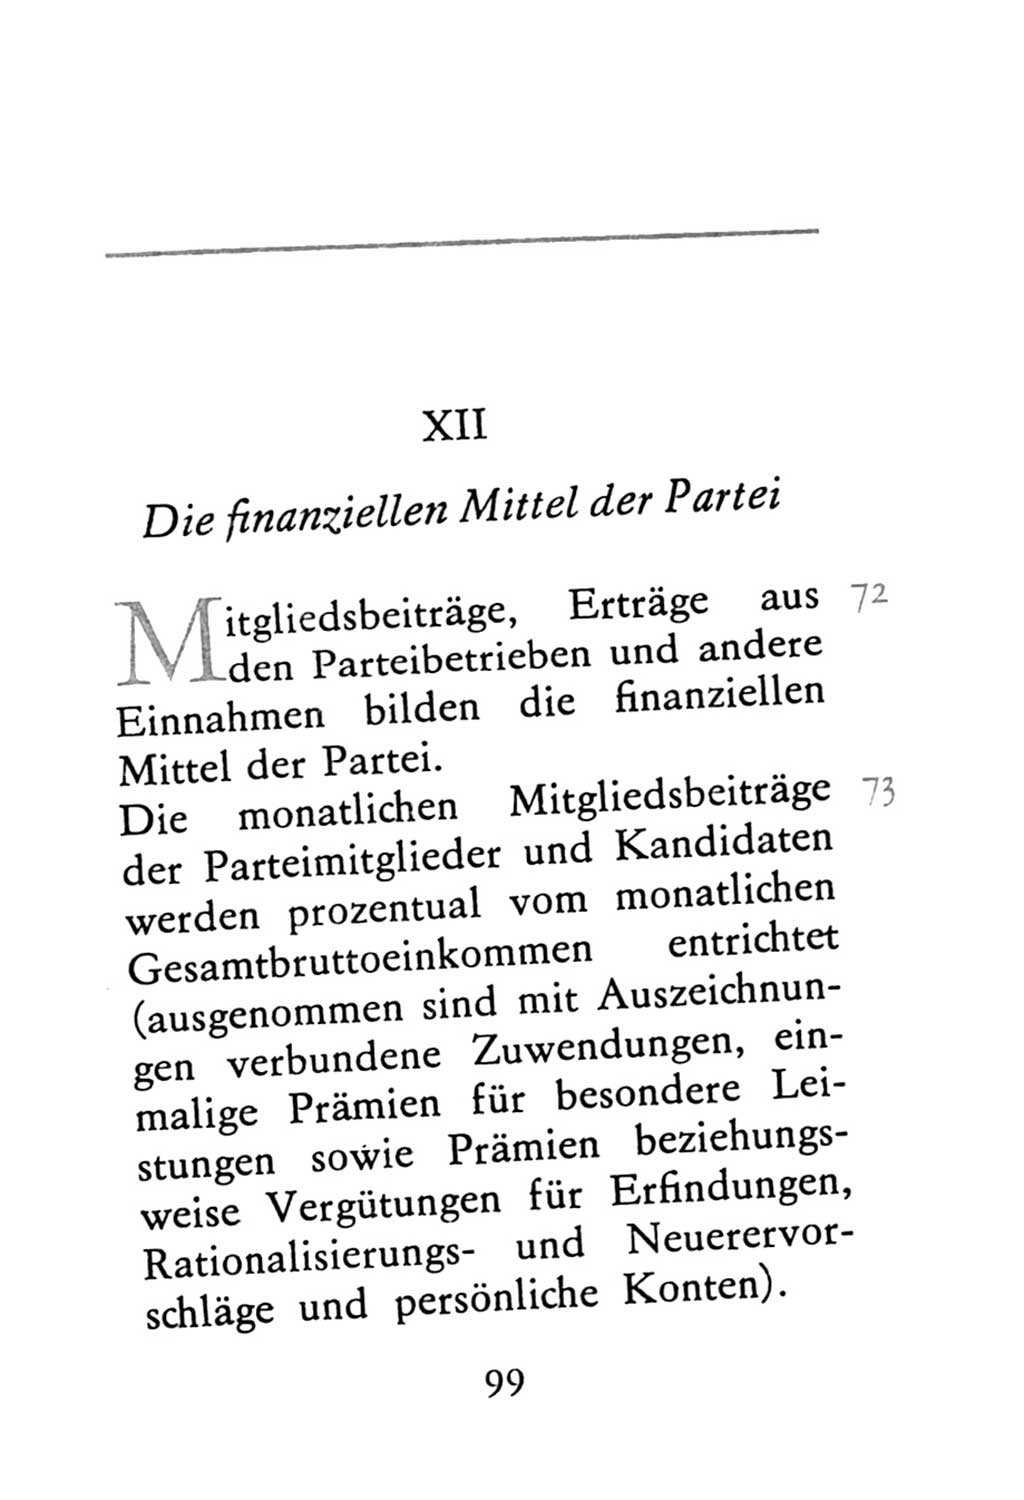 Statut der Sozialistischen Einheitspartei Deutschlands (SED) 1976, Seite 99 (St. SED DDR 1976, S. 99)